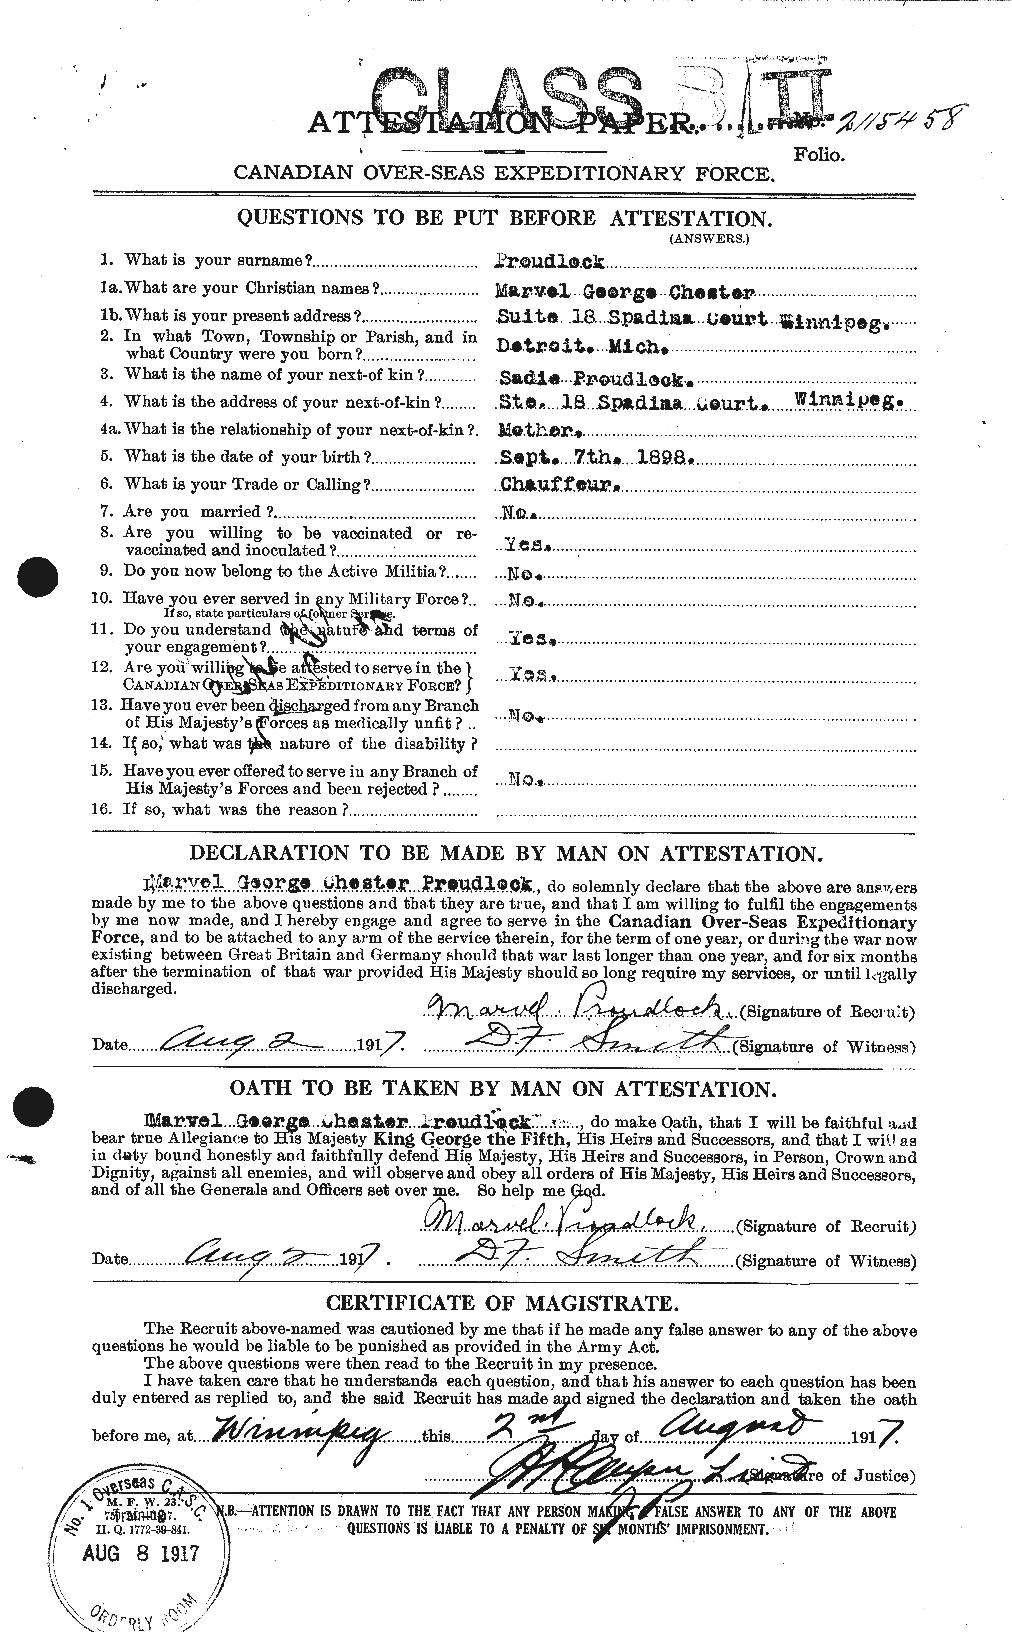 Dossiers du Personnel de la Première Guerre mondiale - CEC 591484a